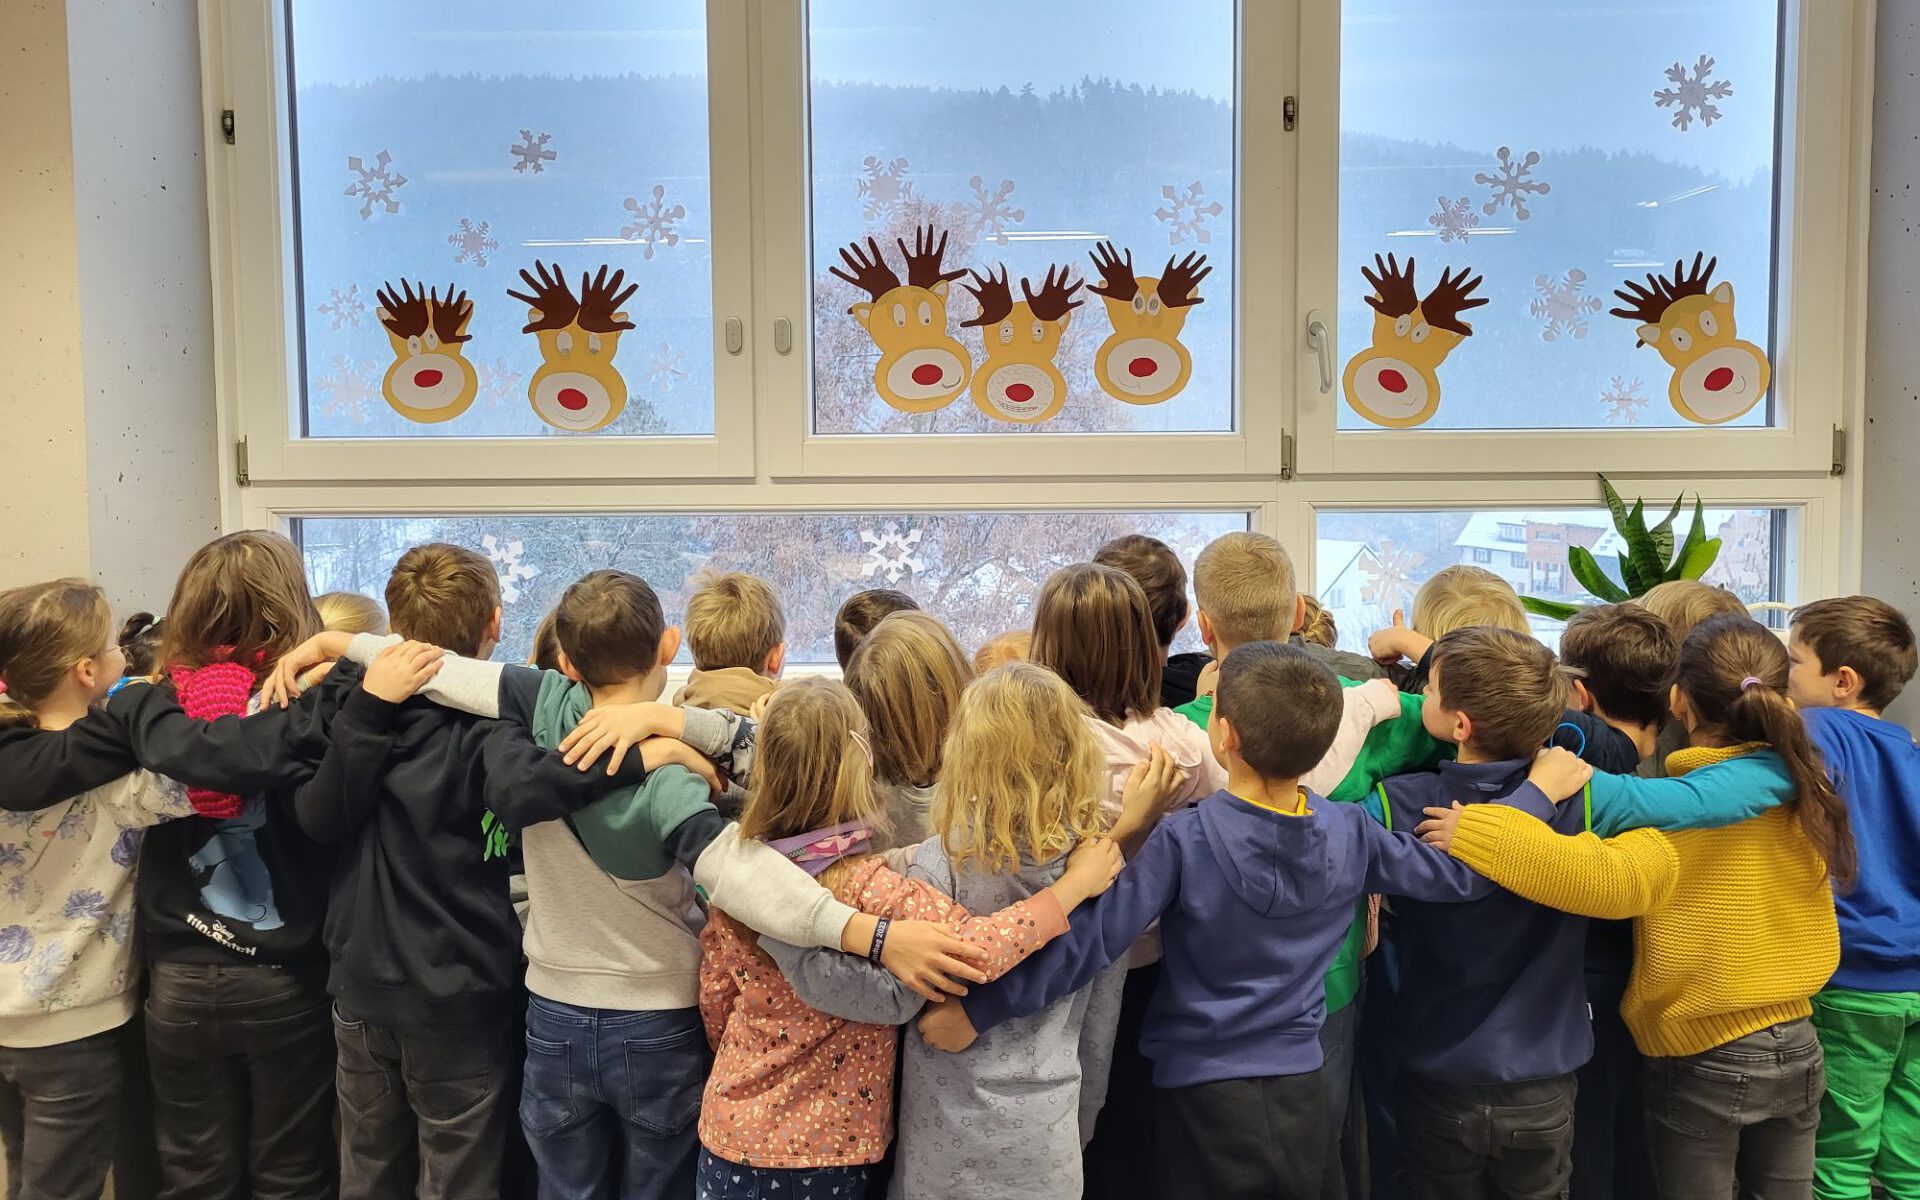 Die Kinder der ersten Klasse stehen am Fenster und blicken hinaus. Einige Kinder umarmen sich. Das Fenster ist winterlich dekoriert.